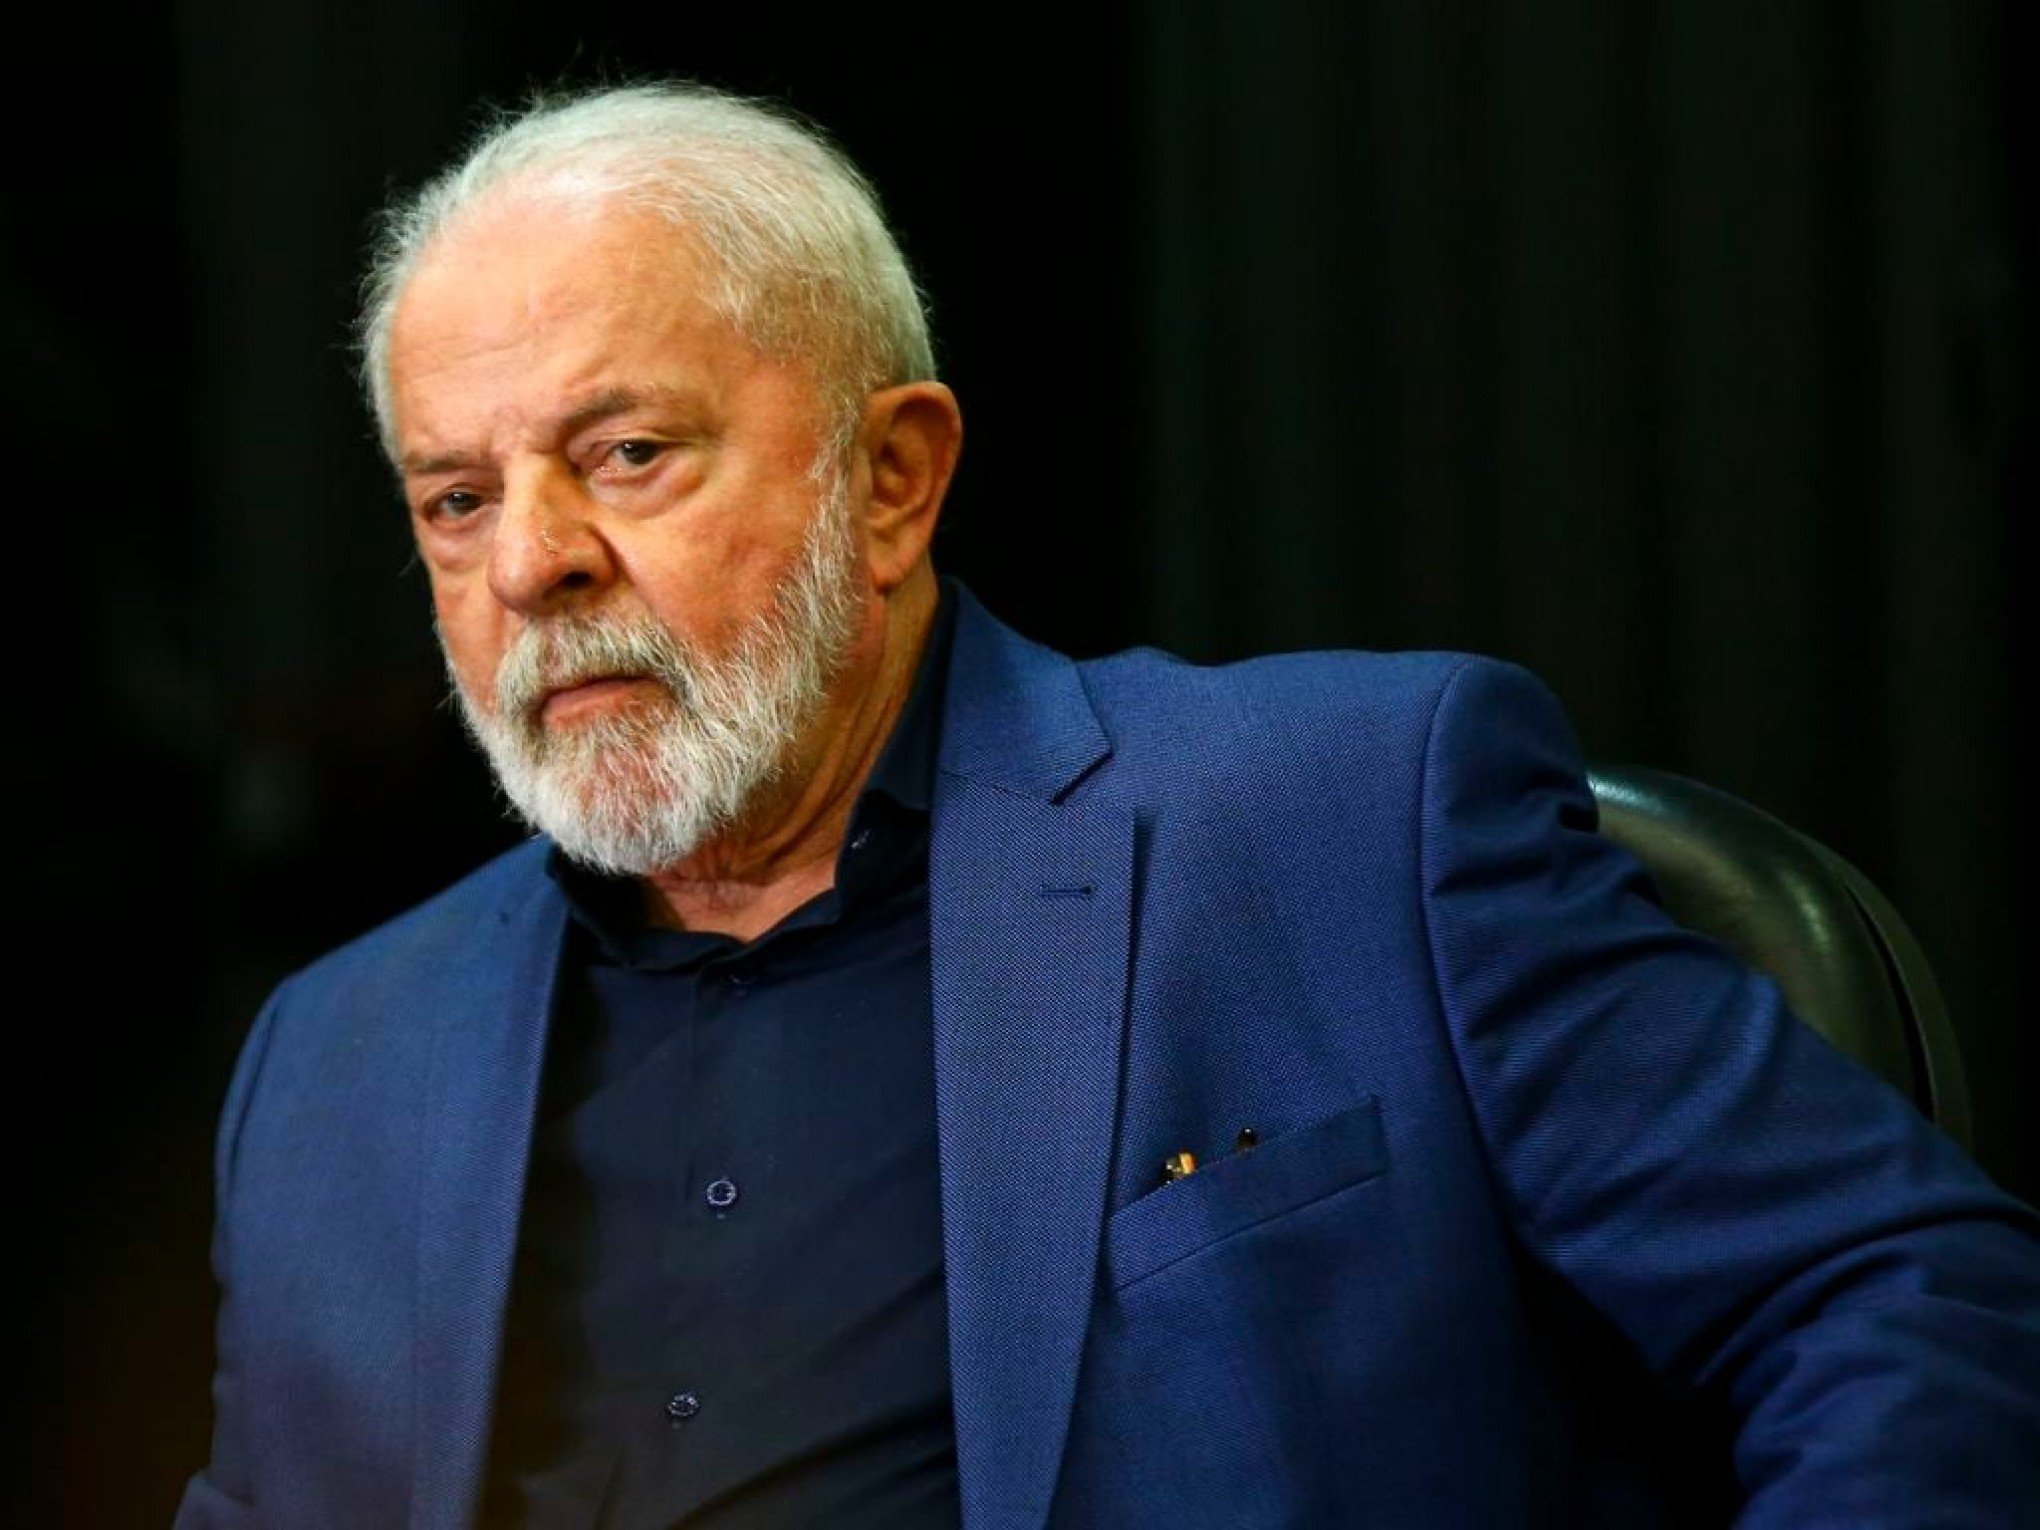 "Como ousa comparar Israel a Hitler?": Ministro insiste que Lula peça desculpas aos judeus por fala sobre Holocausto